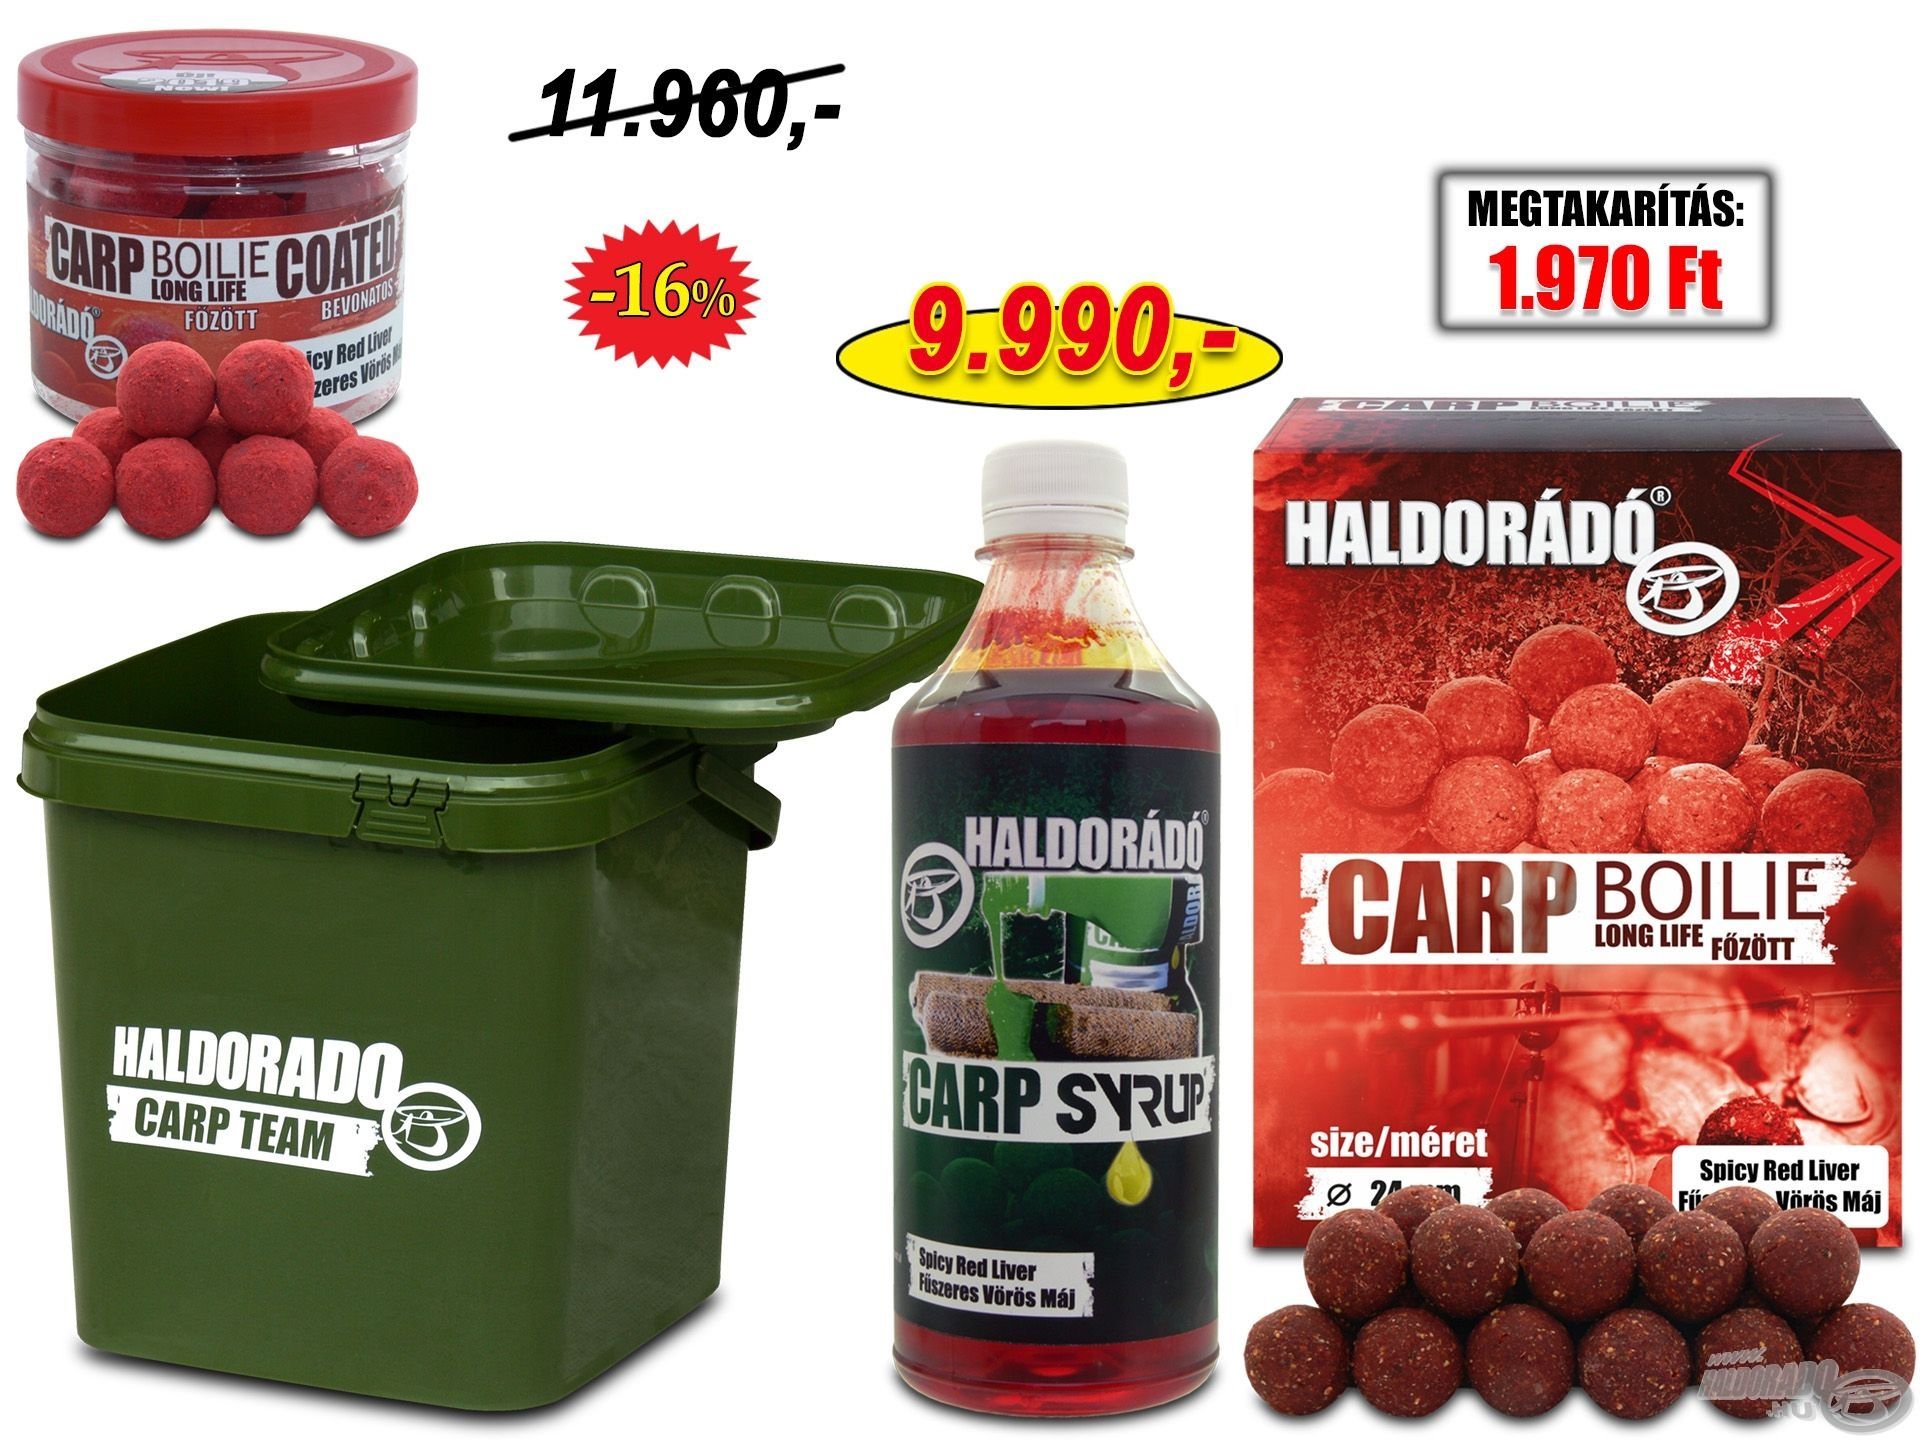 HALDORÁDÓ Fűszeres Vörös Máj Nagyponty csomag